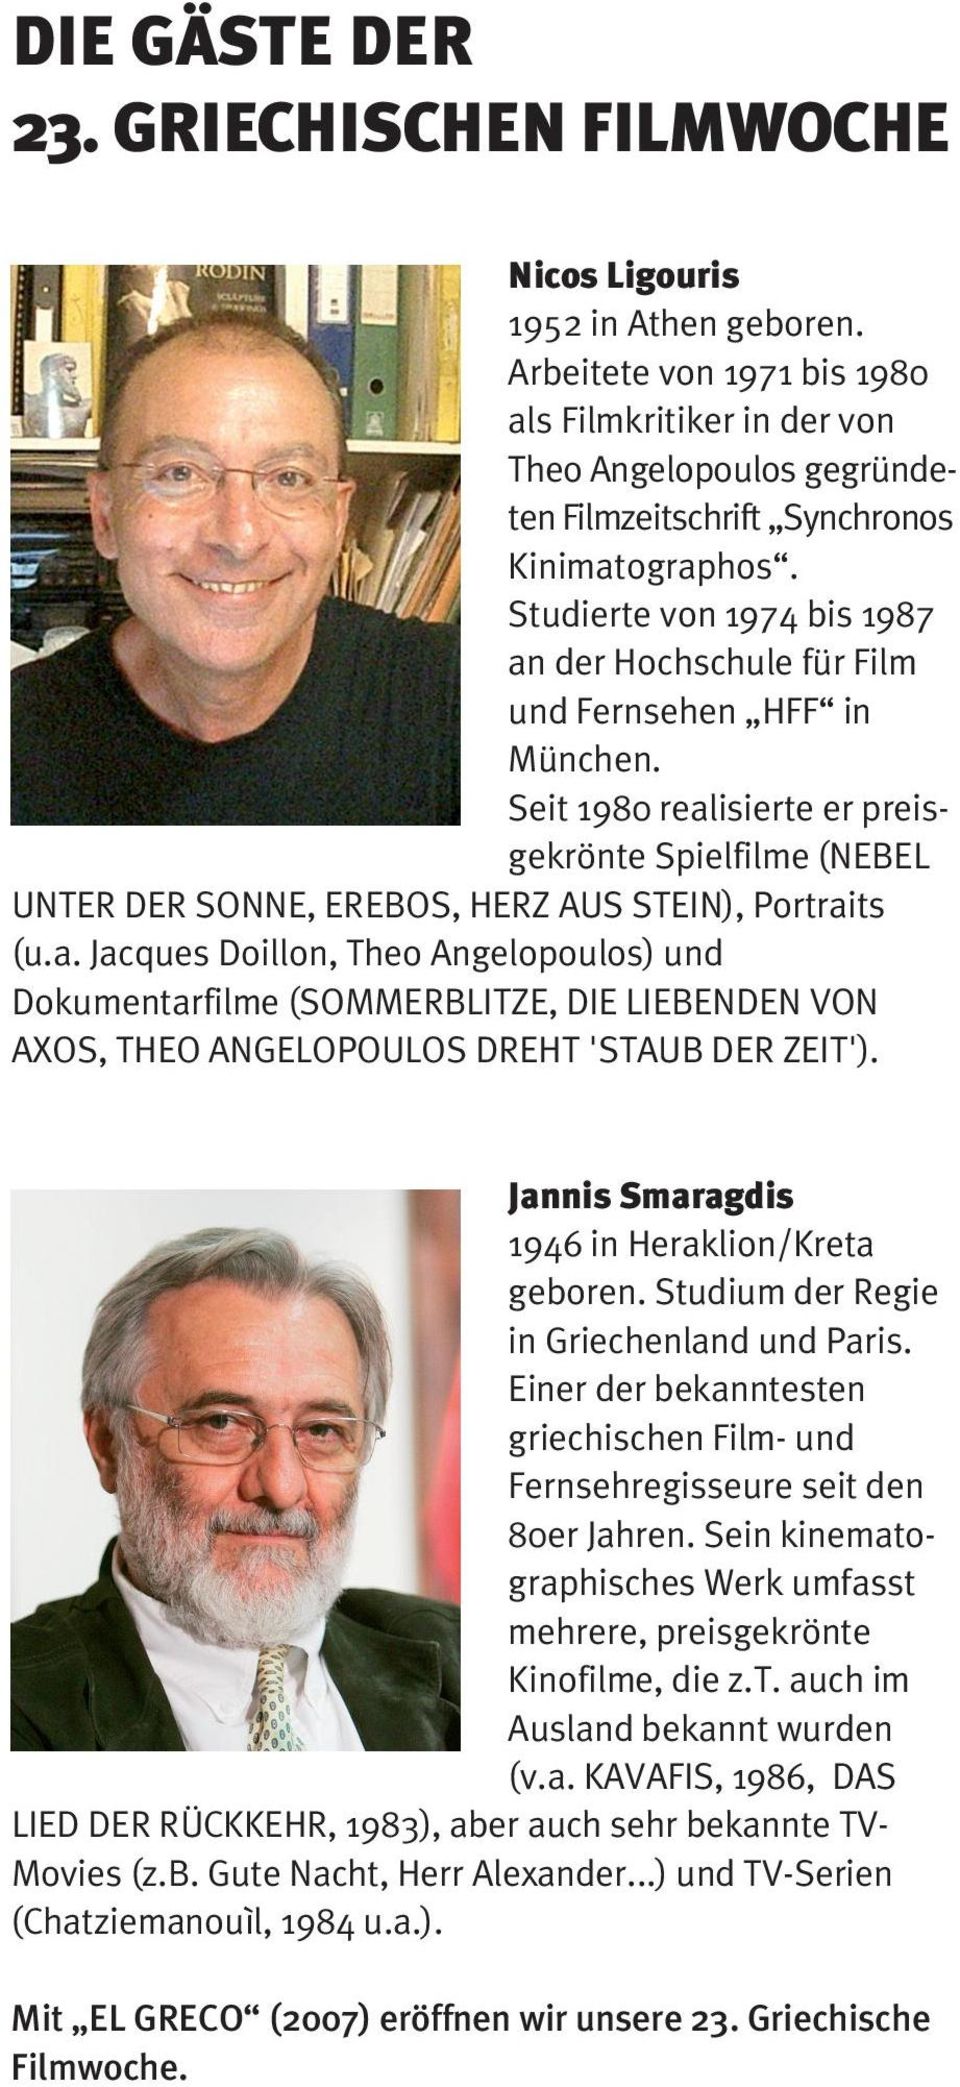 Studierte von 1974 bis 1987 an der Hochschule für Film und Fernsehen HFF in München. Seit 1980 realisierte er preisgekrönte Spielfilme (NEBEL UNTER DER SONNE, EREBOS, HERZ AUS STEIN), Portraits (u.a. Jacques Doillon, Theo Angelopoulos) und Dokumentarfilme (SOMMERBLITZE, DIE LIEBENDEN VON AXOS, THEO ANGELOPOULOS DREHT 'STAUB DER ZEIT').